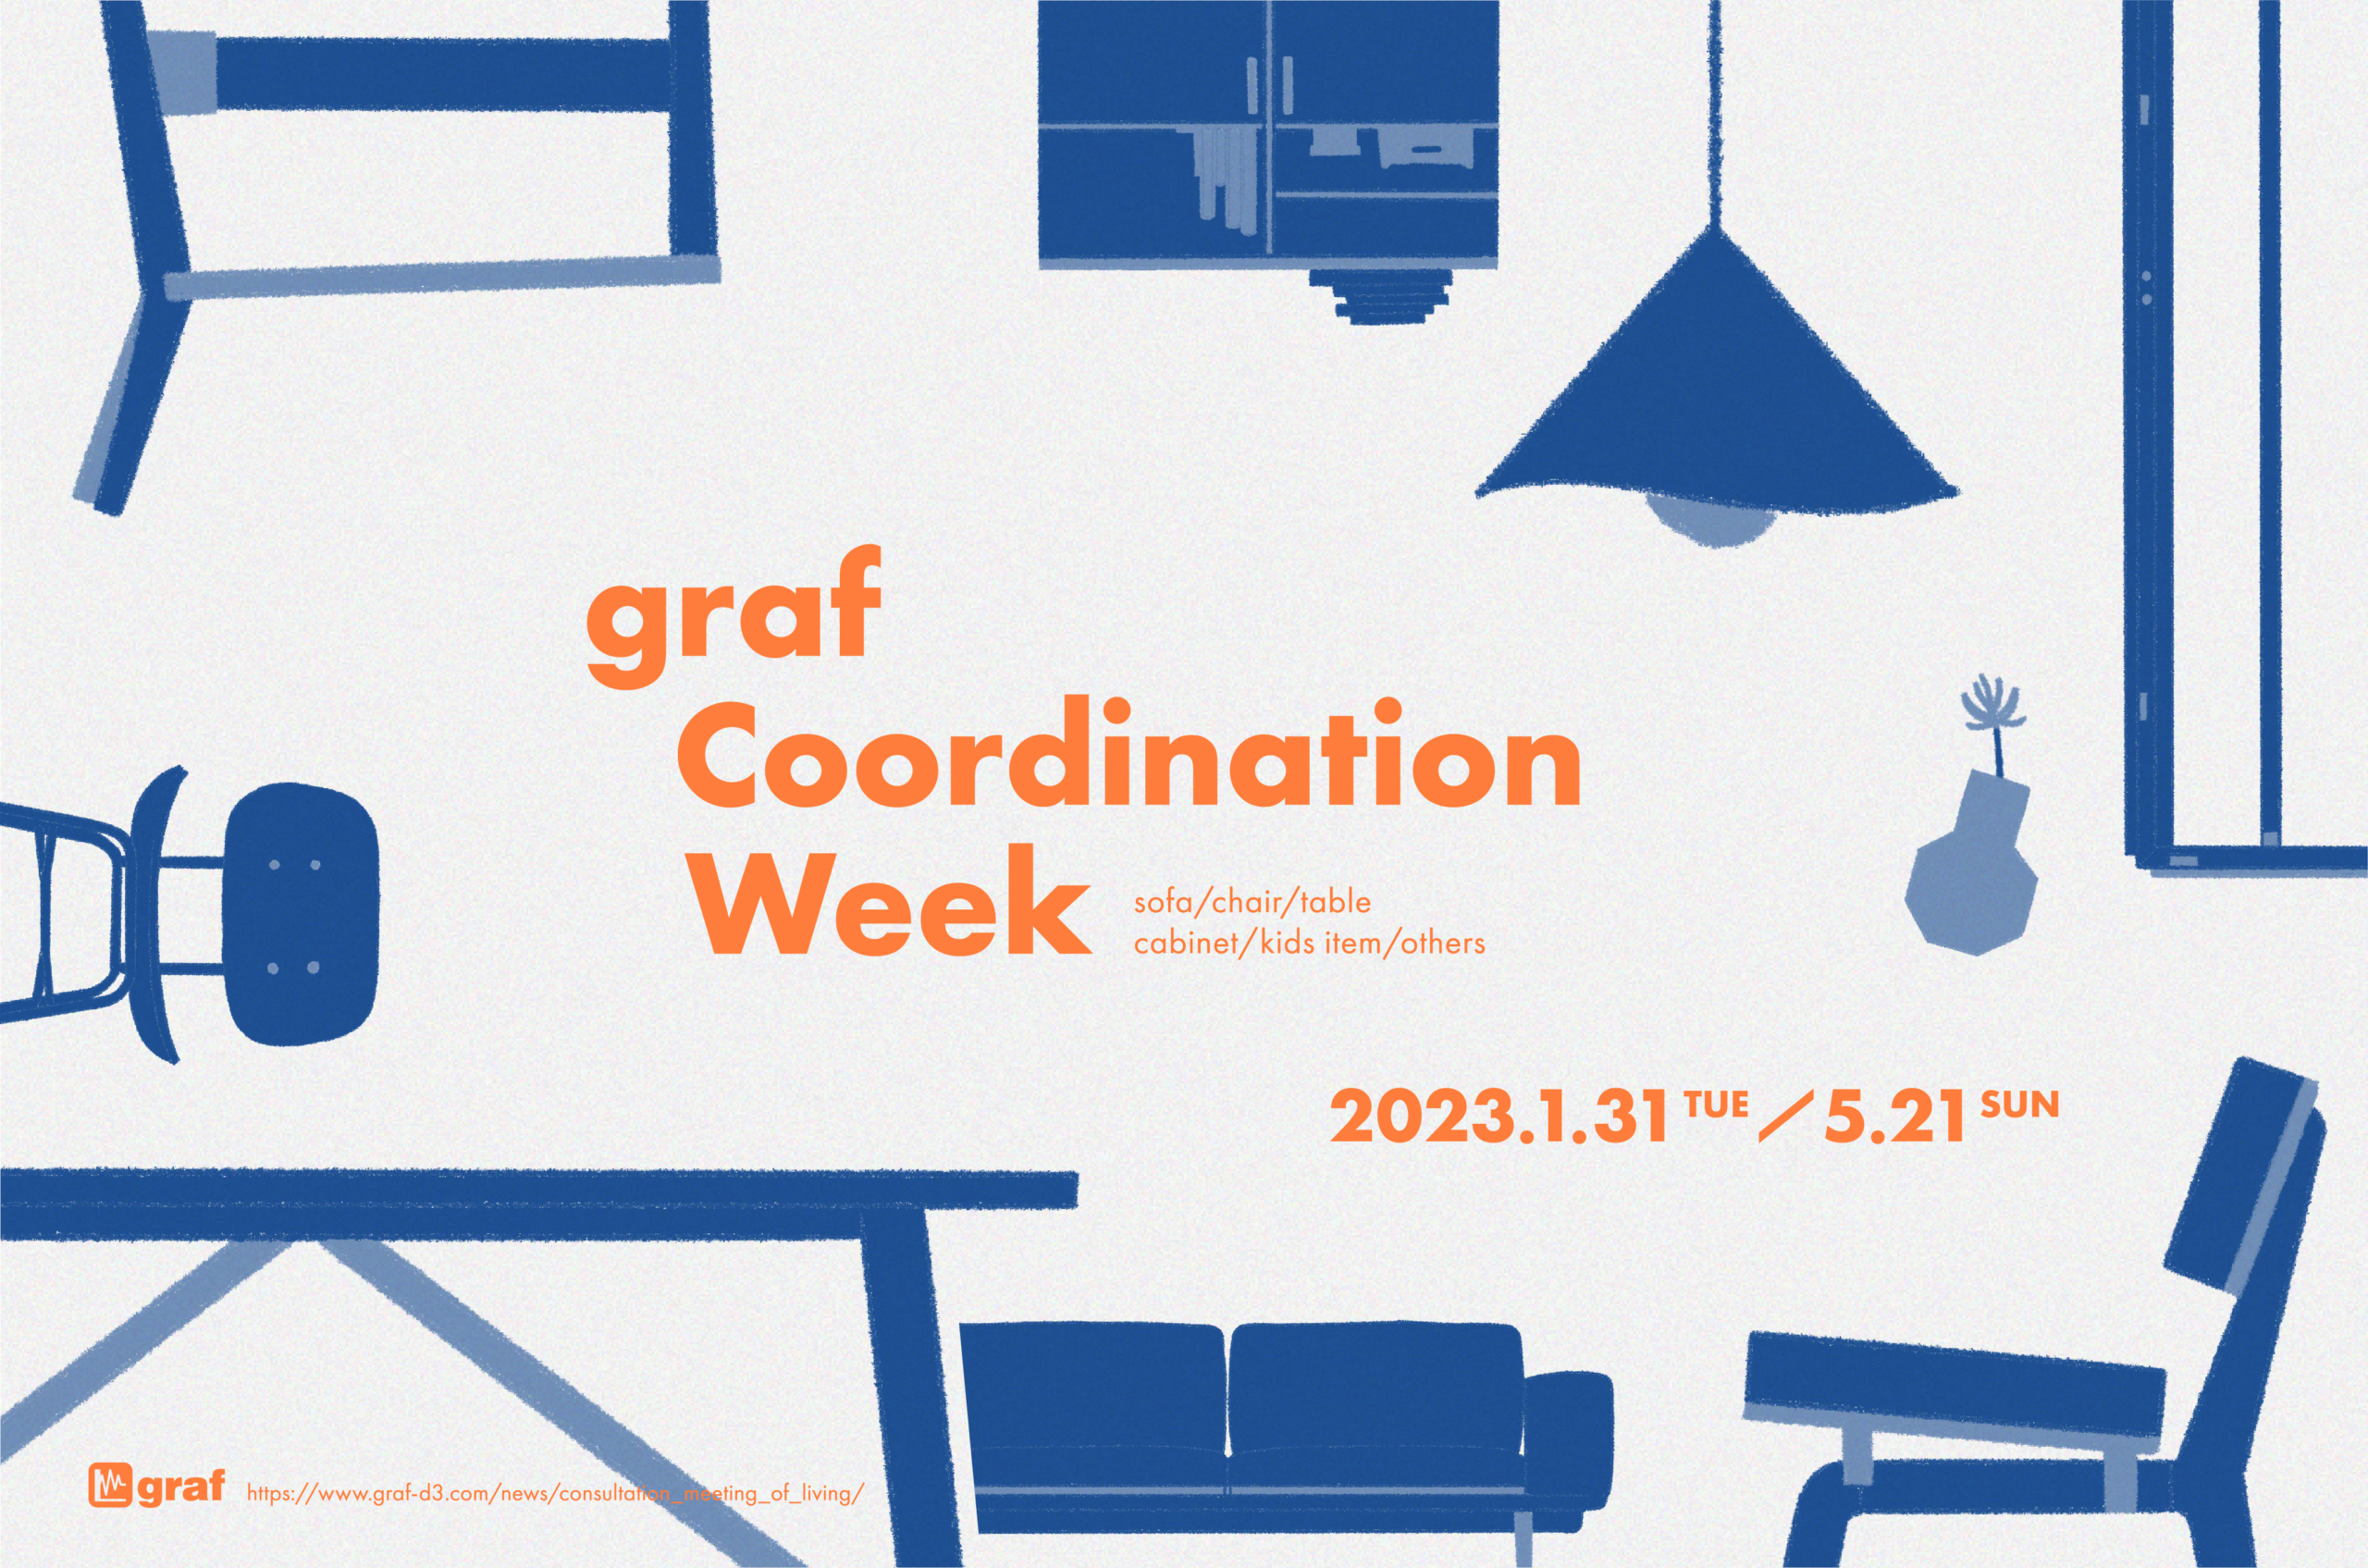 graf Coordination Week